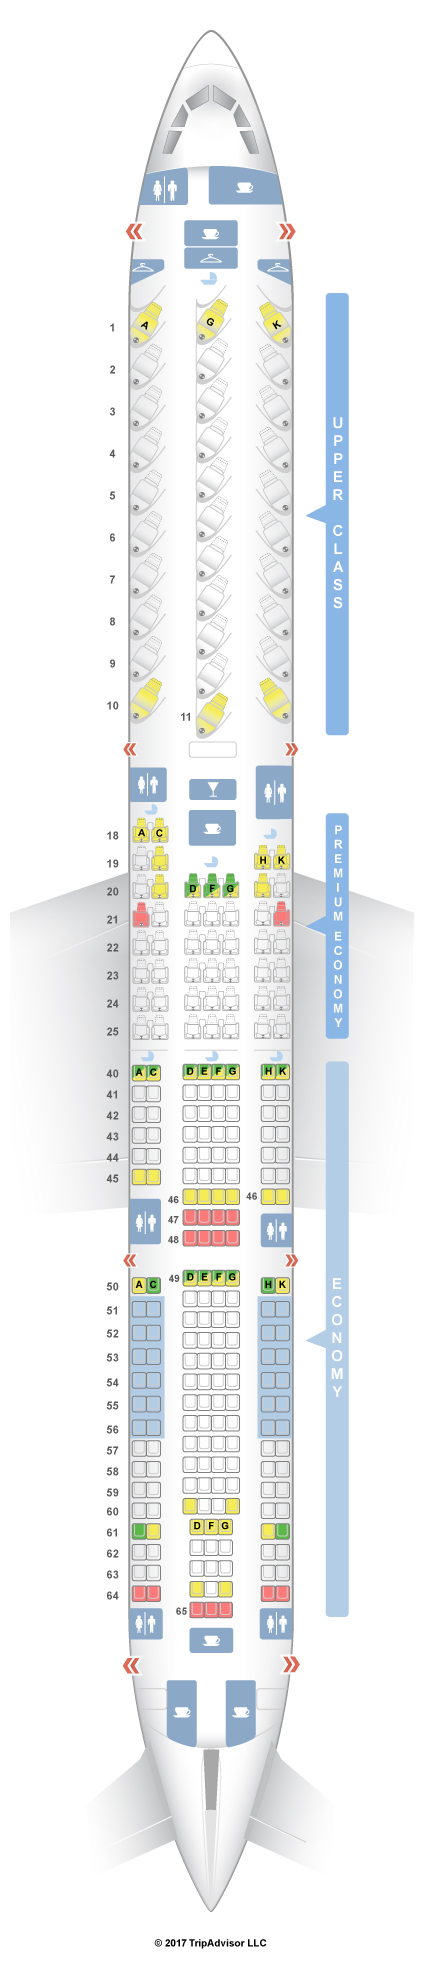 Seatguru Seat Map Virgin Atlantic Airbus A330 300 333 V2